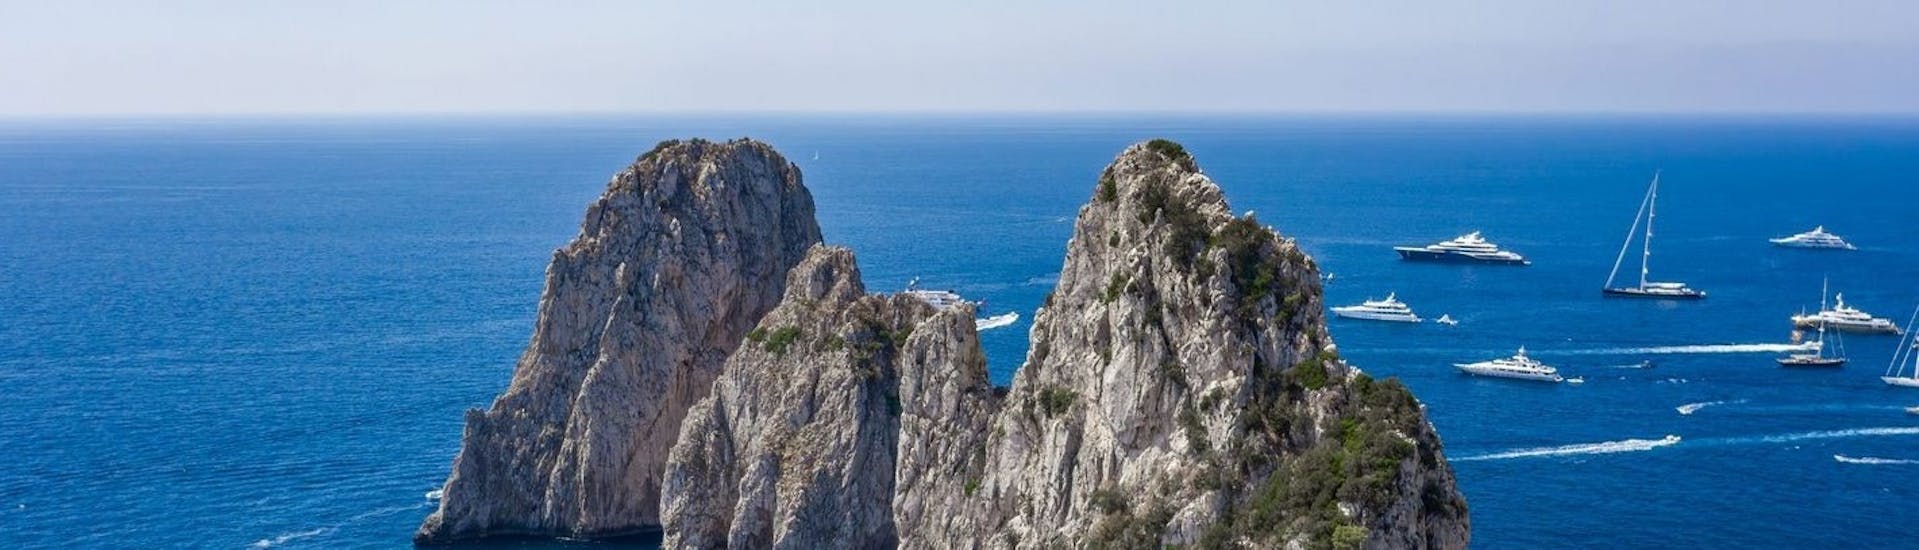 Uitzicht op de Faraglioni di Capri die je kunt bewonderen tijdens de boottocht van Capri rond het eiland en naar de Blauwe Grot.